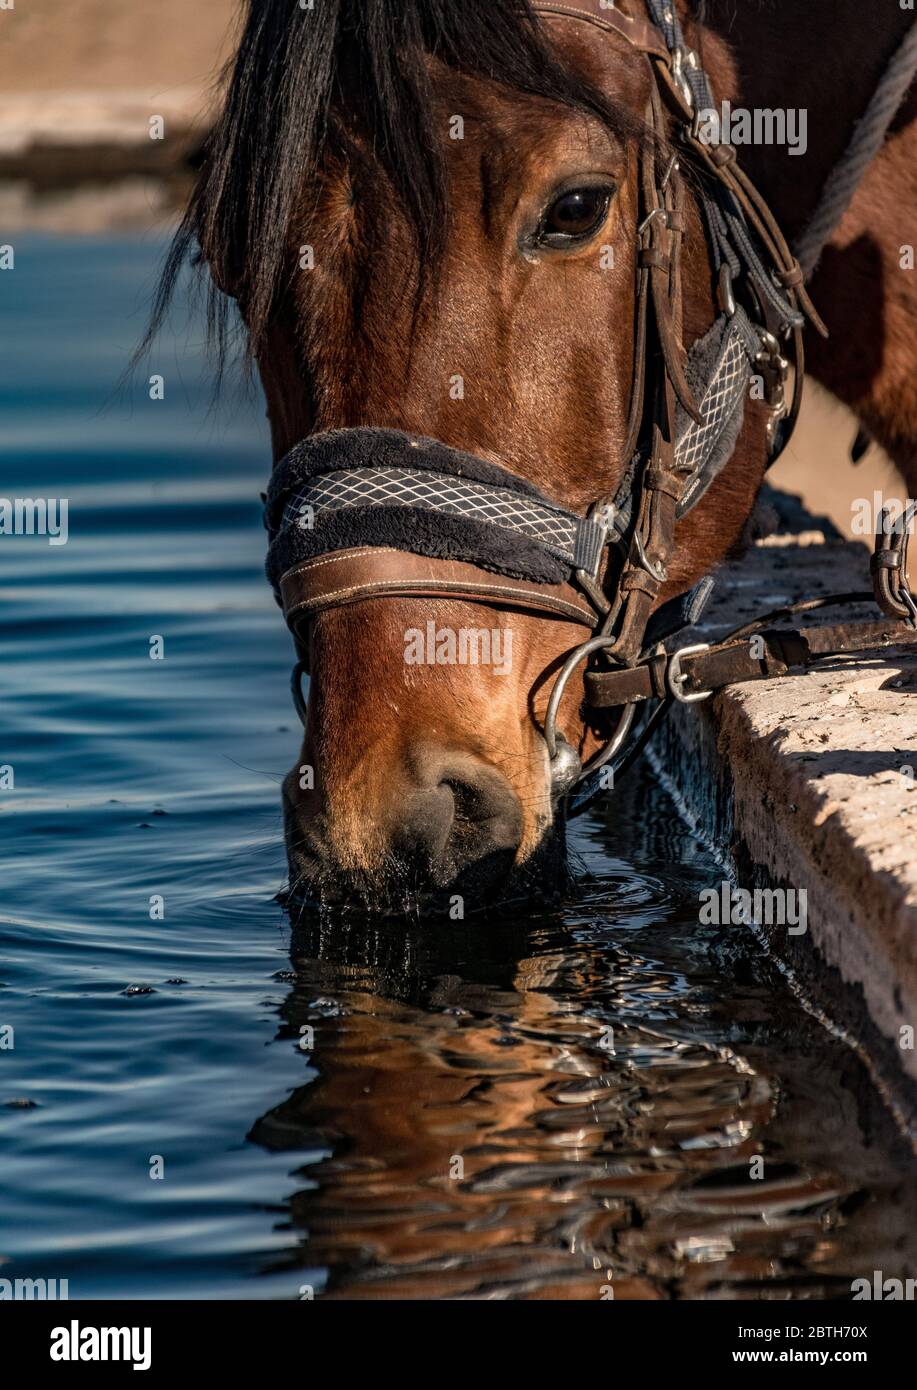 Retrato de un caballo de agua potable Foto de stock